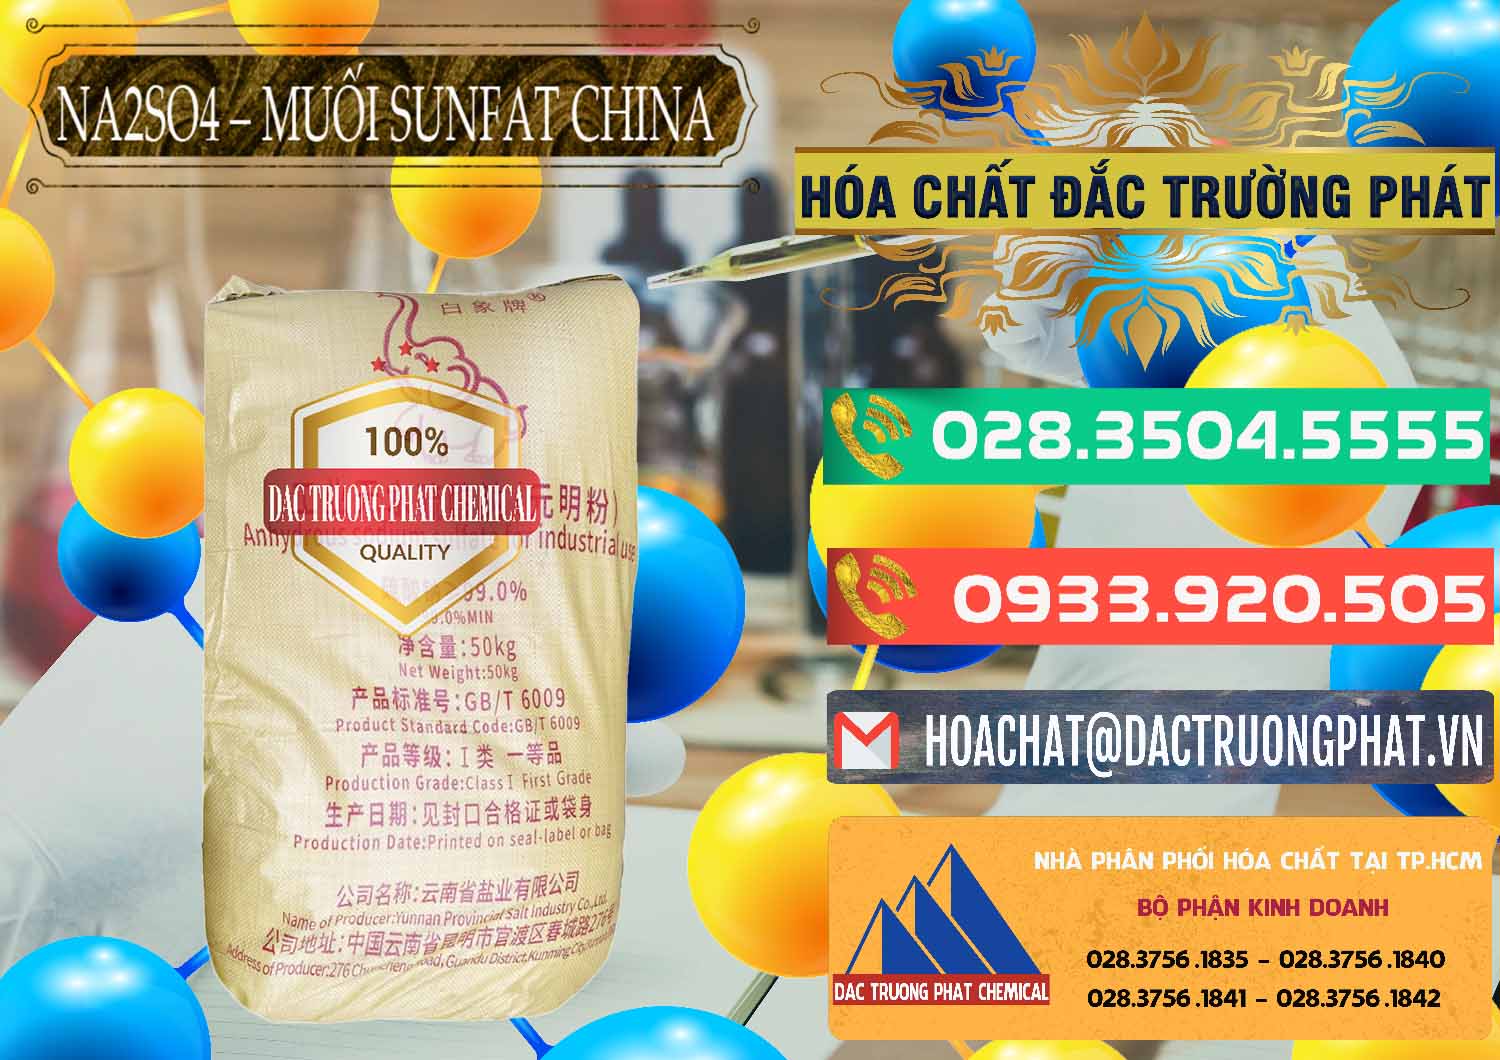 Công ty bán & phân phối Sodium Sulphate - Muối Sunfat Na2SO4 Logo Con Voi Trung Quốc China - 0409 - Nơi chuyên kinh doanh và phân phối hóa chất tại TP.HCM - congtyhoachat.com.vn